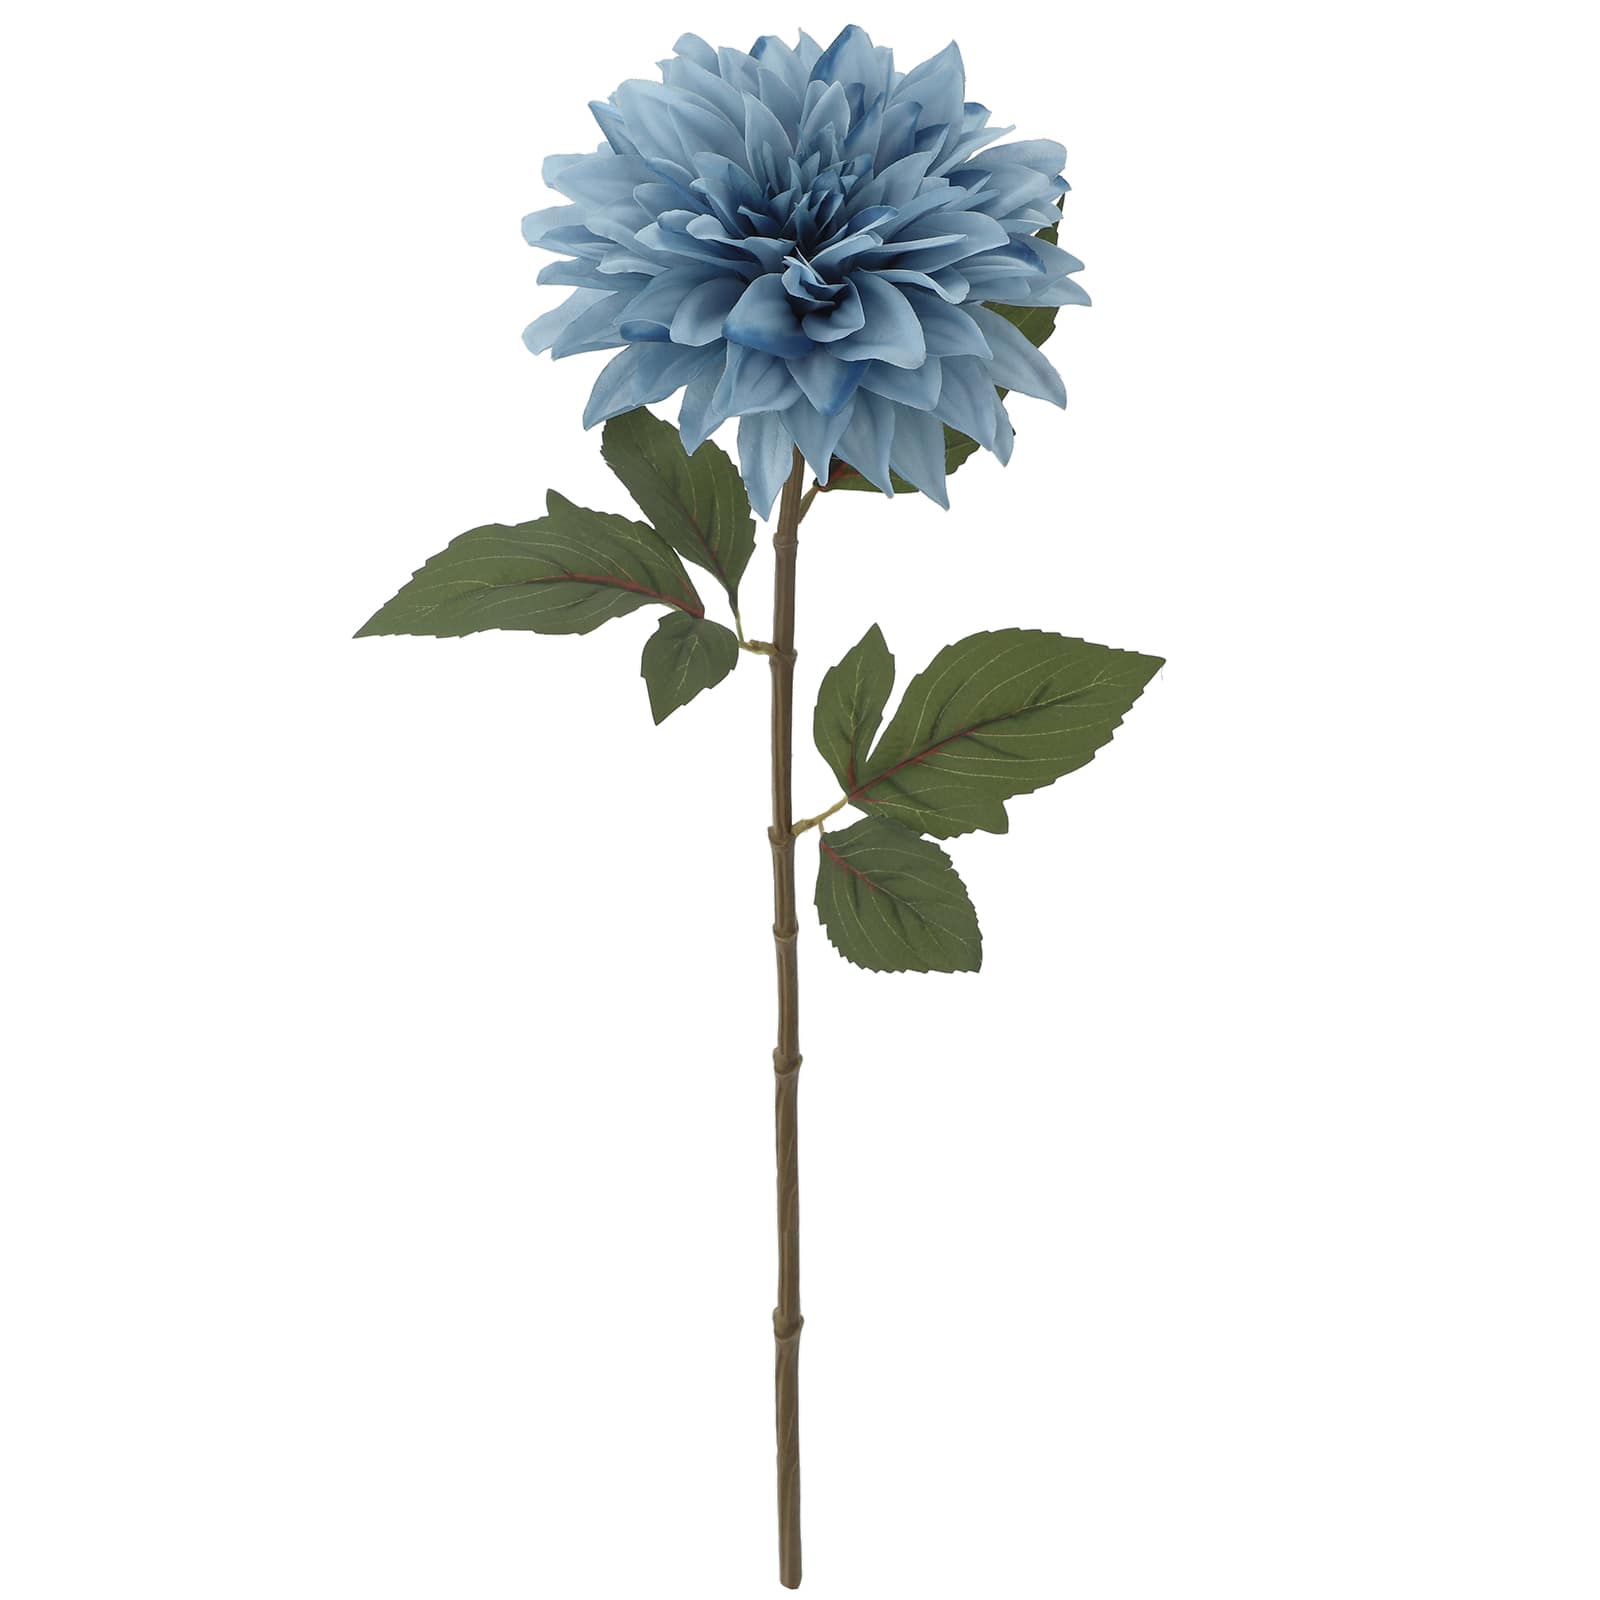 blue dahlia flower